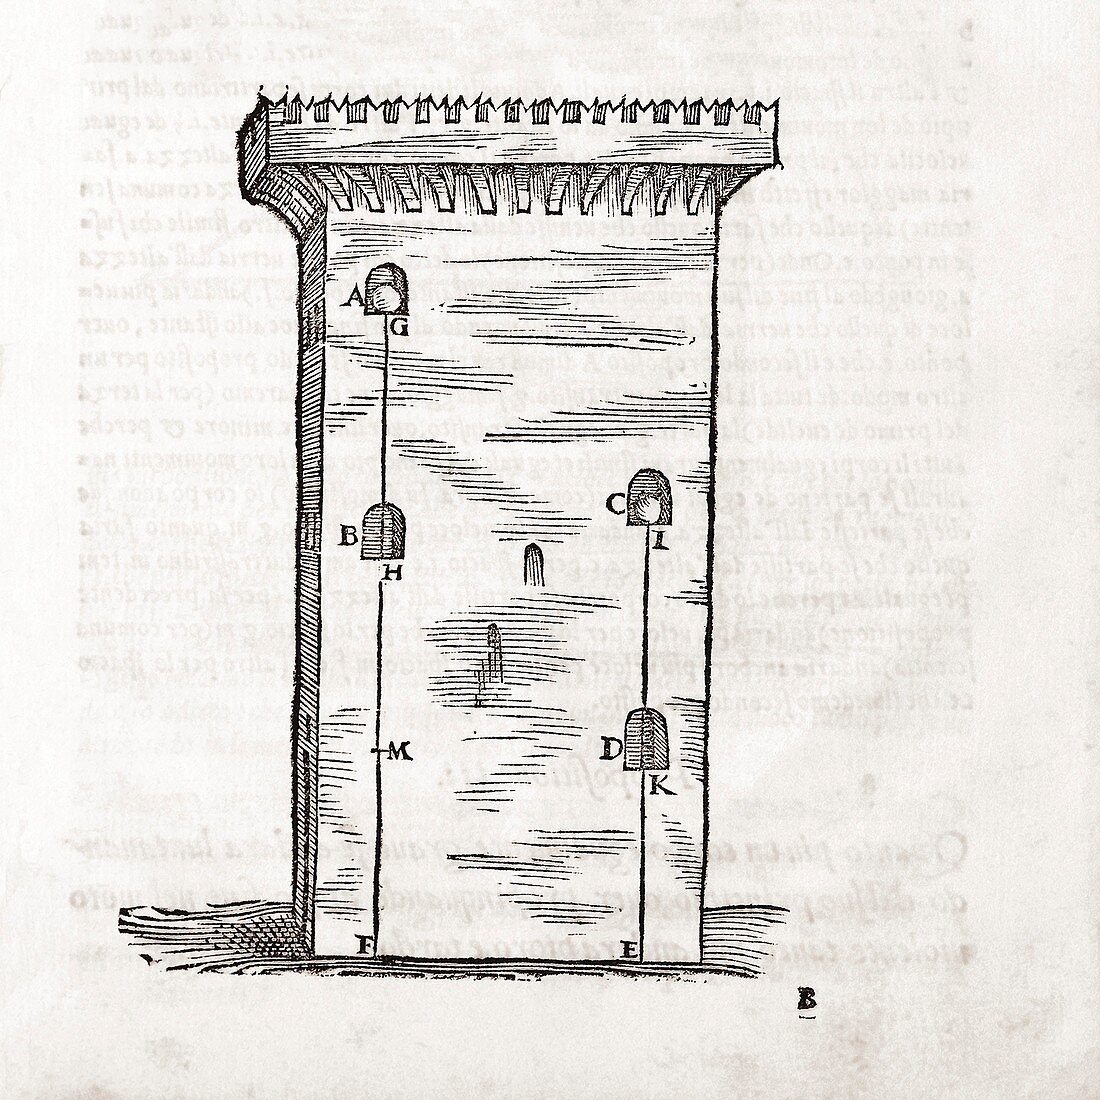 Tartaglia on ballistics, 16th century